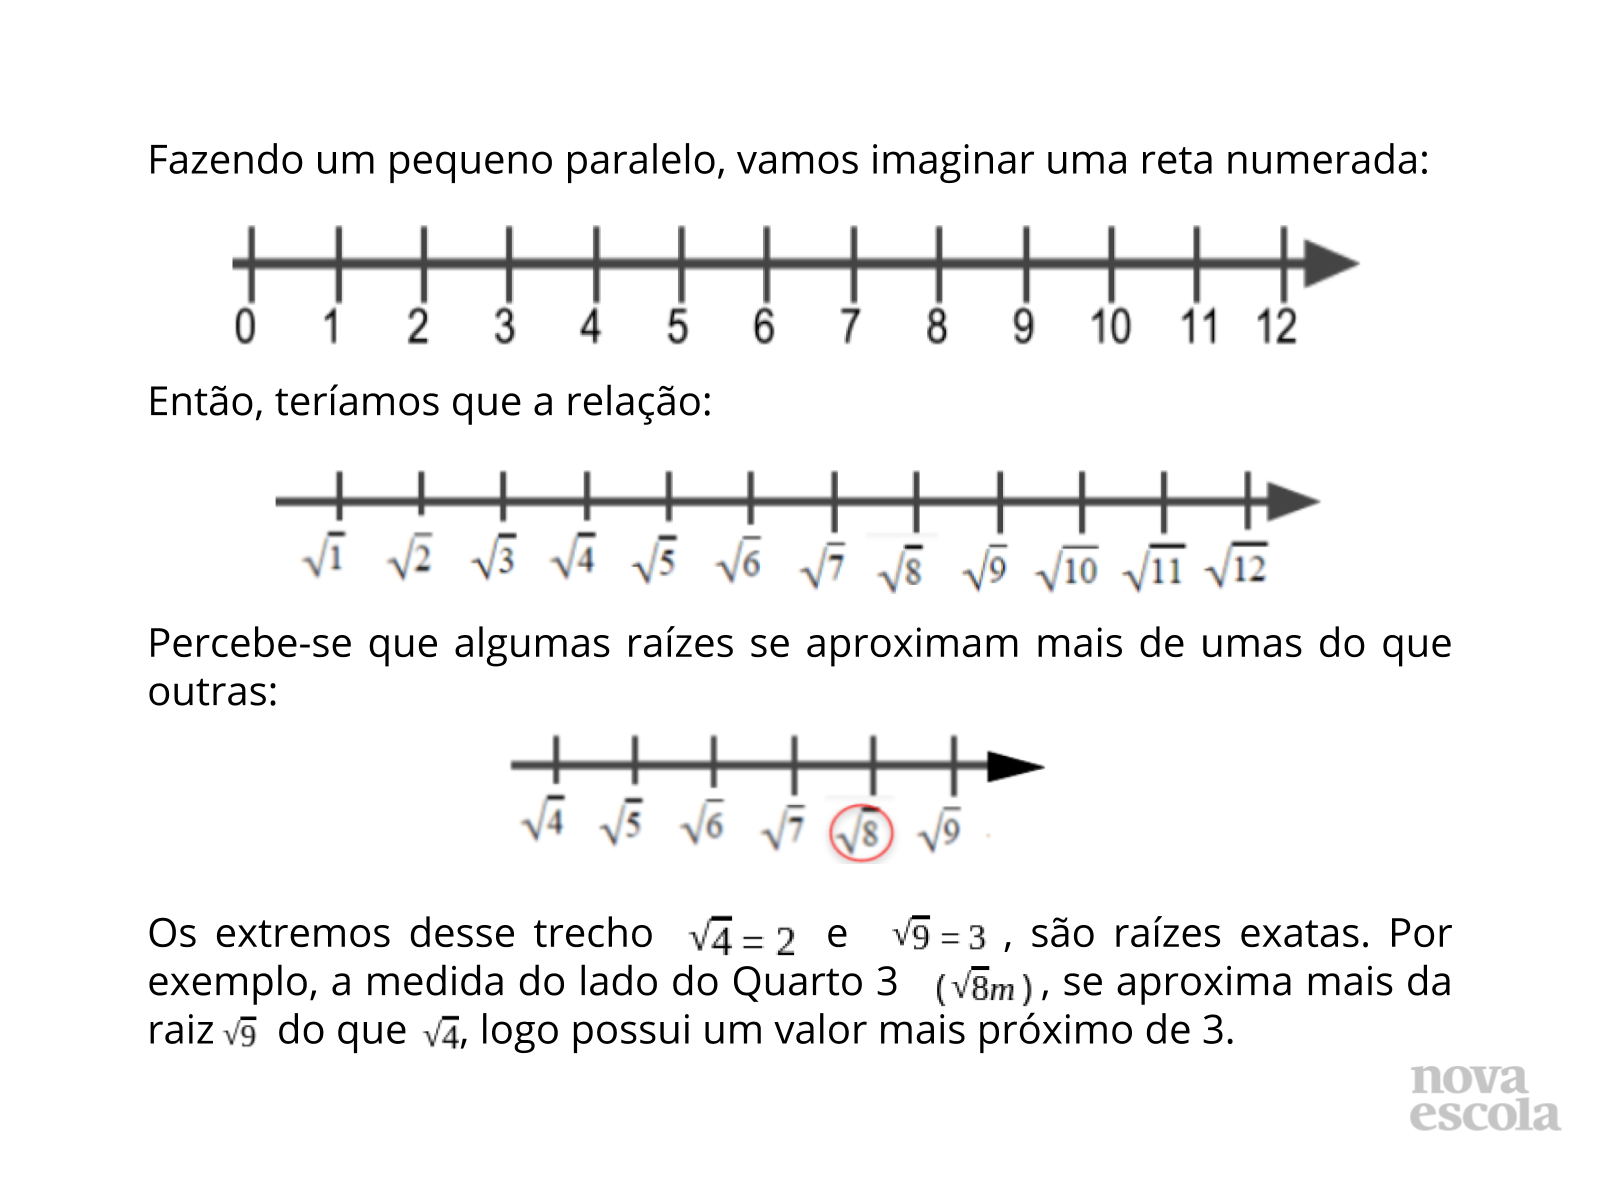 Explicação da localização das raízes não exatas na reta numerada